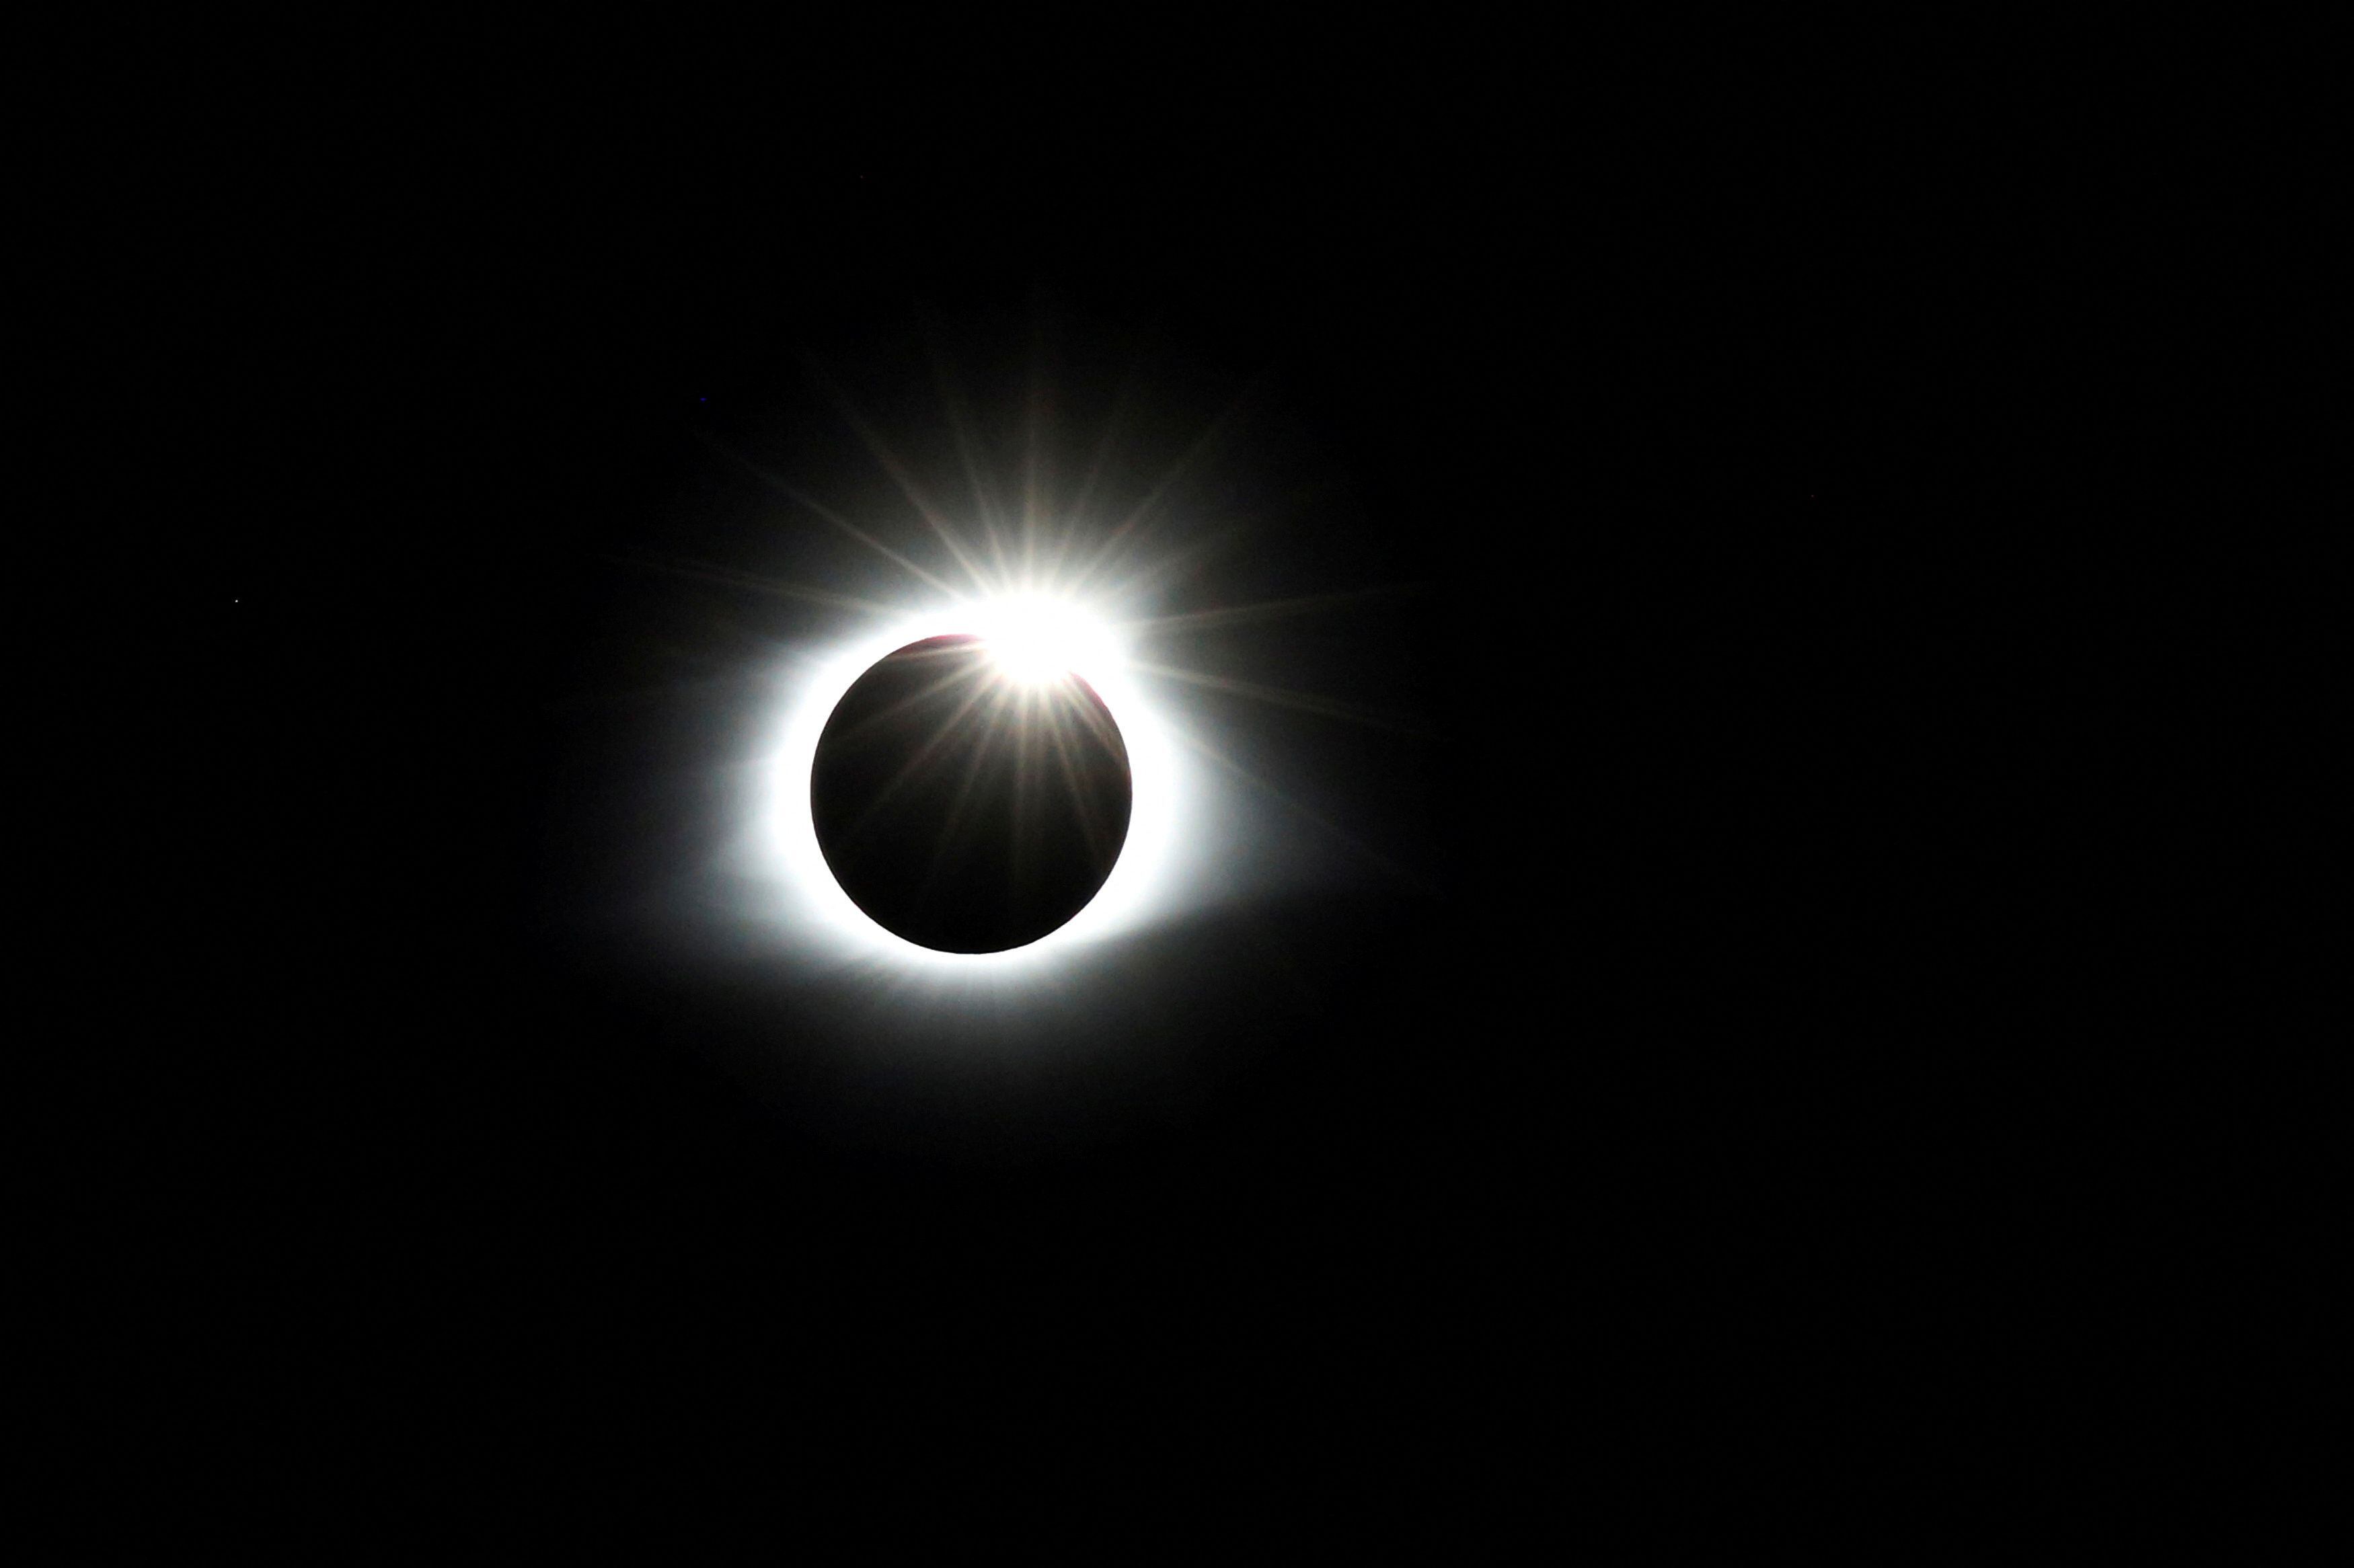 El eclipse será monitoreado por diferentes institutos, tanto de forma remota como desde México, como lo harán la NASA y la UNAM (REUTERS/Jonathan Ernst)